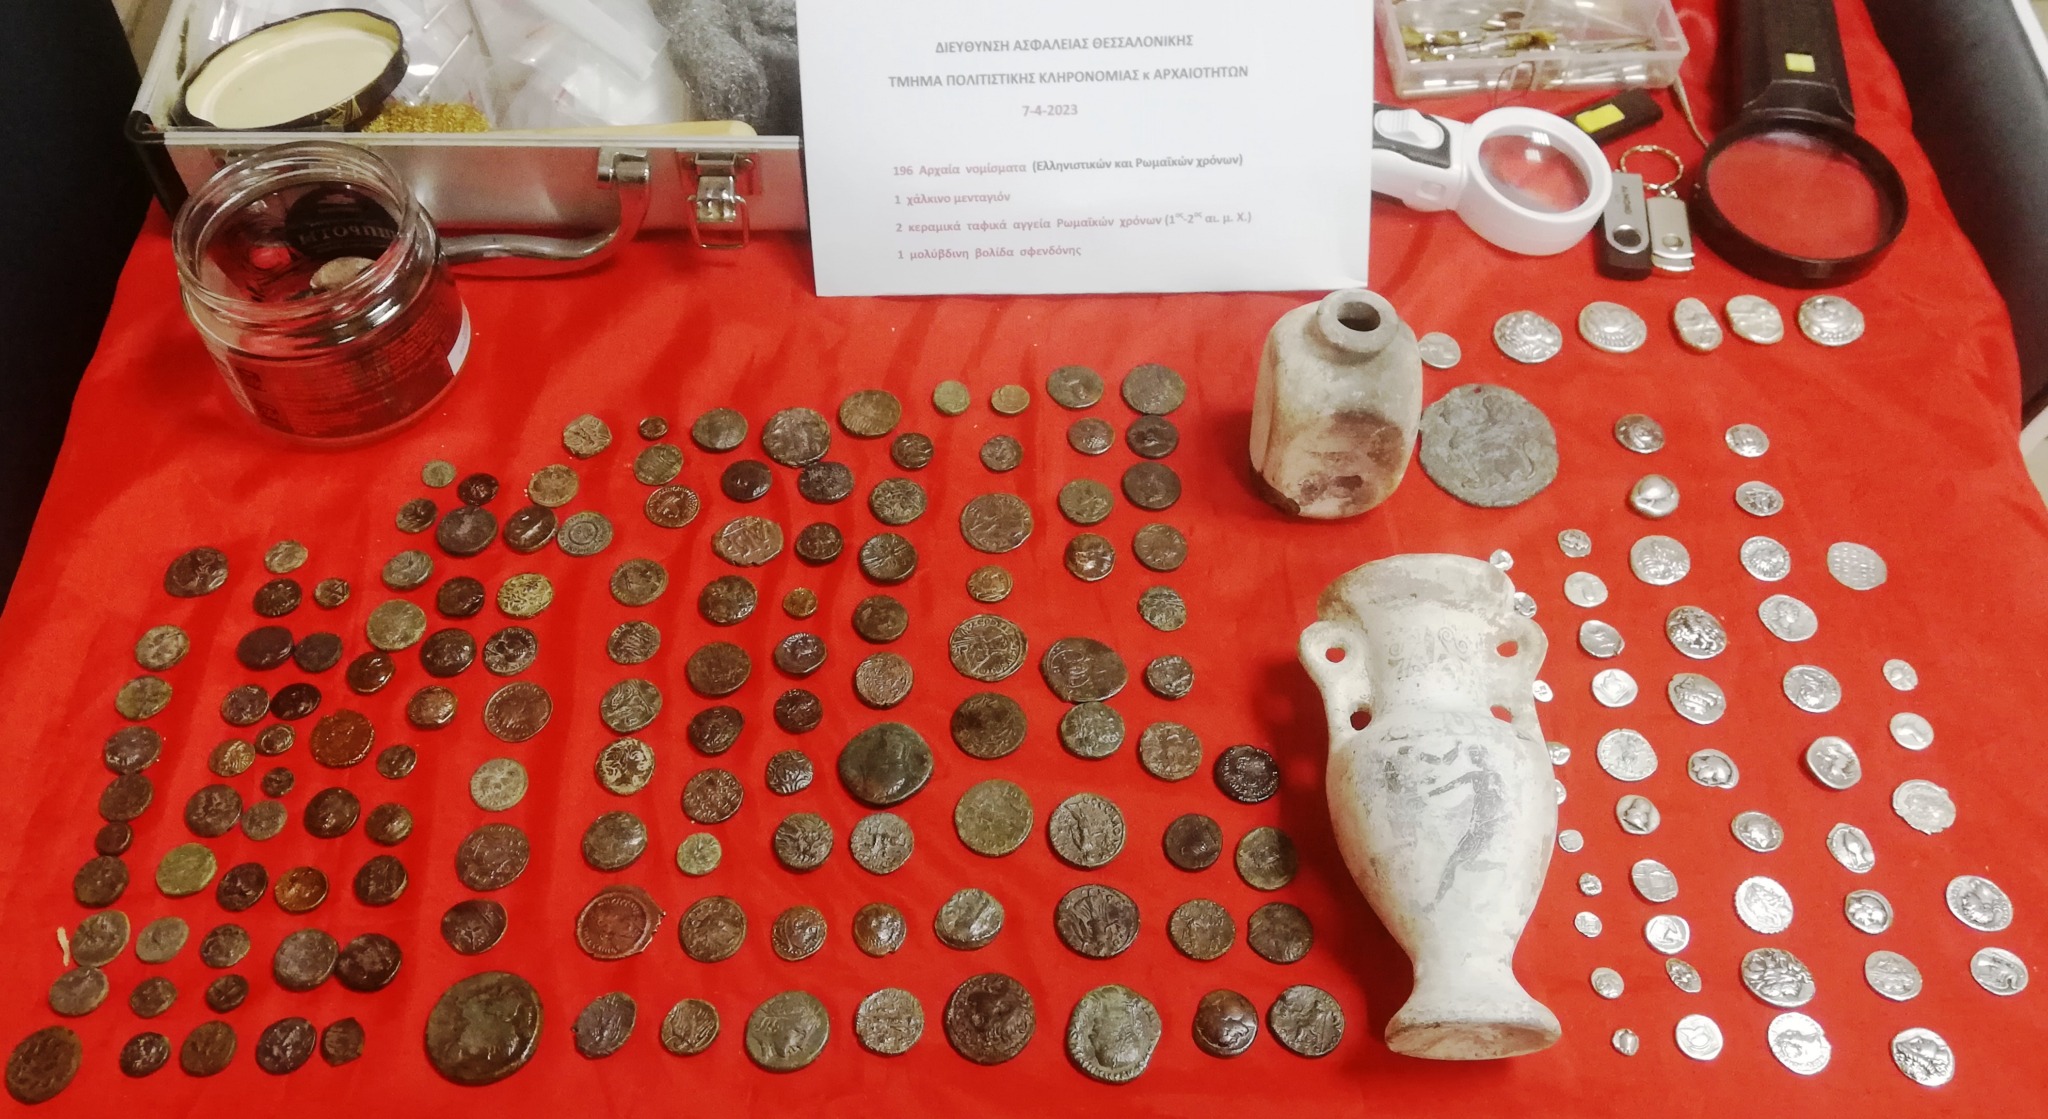 Συνελήφθη αρχαιοκάπηλος στη Θεσσαλονίκη - Επιχείρησε να στείλει αρχαία νομίσματα στη Γερμανία κρυμμένα σε ελαιόλαδο